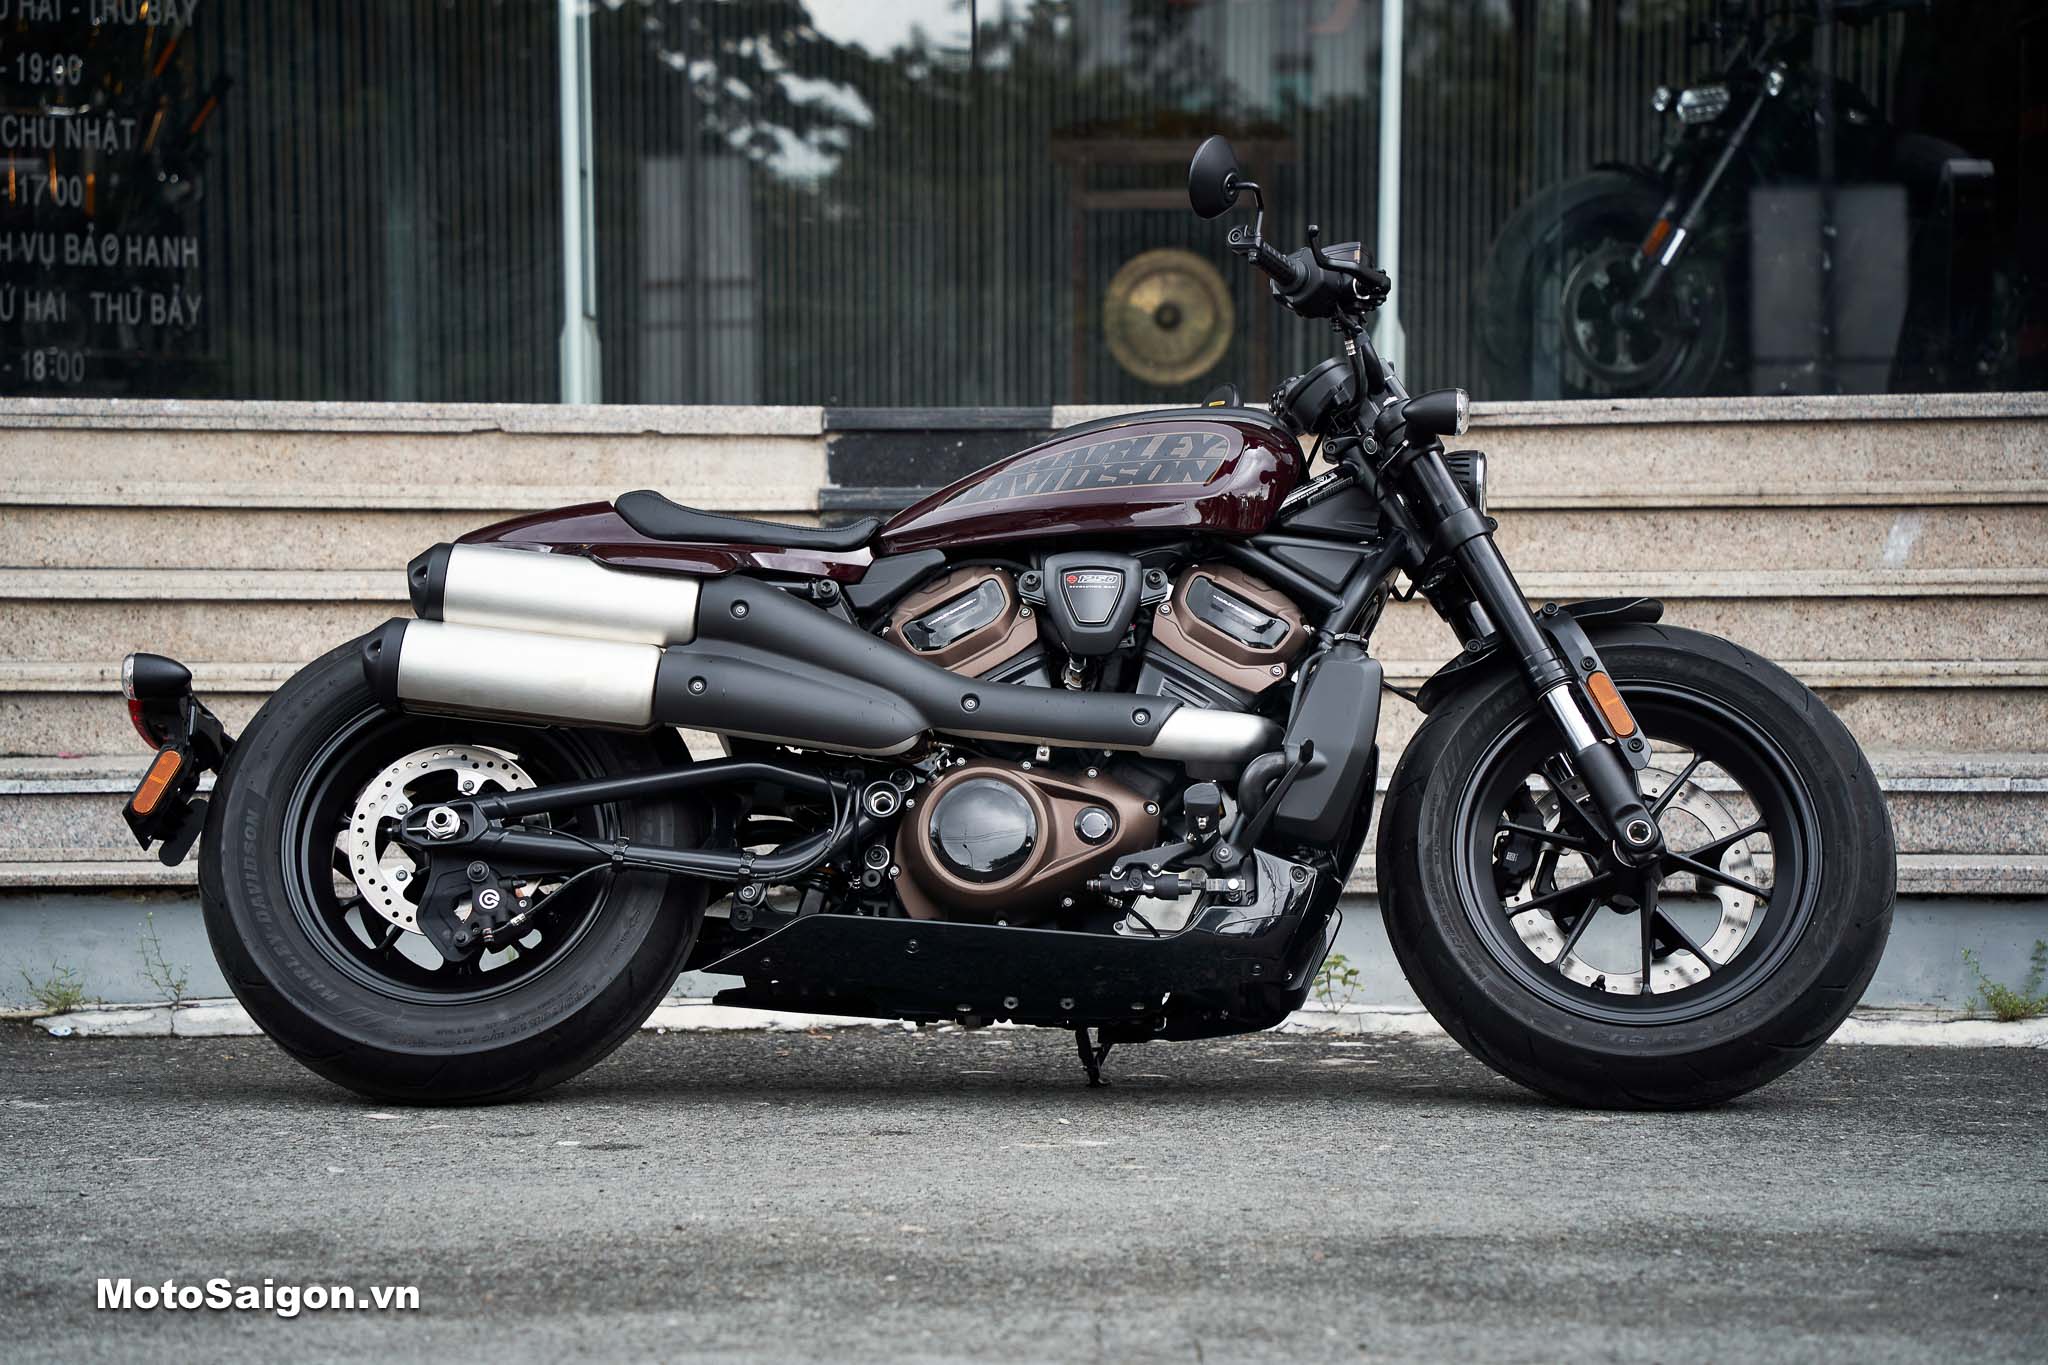 Harley-Davidson Sportster S chuẩn bị ra mắt chính thức tại Việt Nam